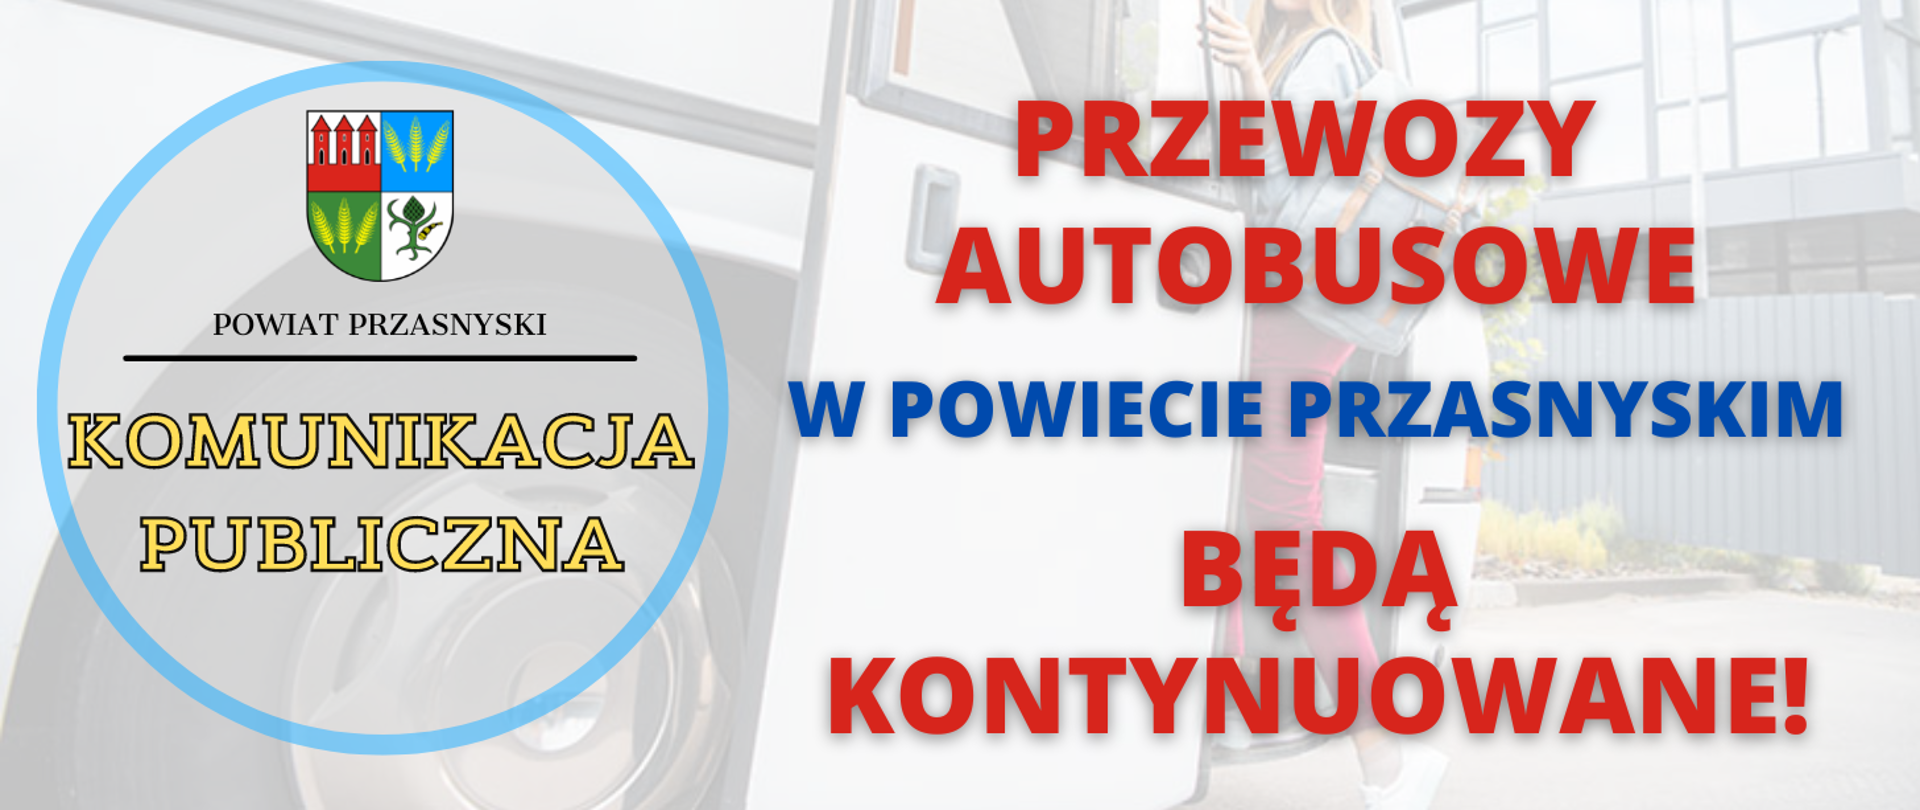 Grafika przedstawia informację o kontynuowaniu publicznej komunikacji autobusowej w Powiecie Przasnyskim, która zyskała dofinansowanie w ramach dodatkowego limitu środków na ten cel.